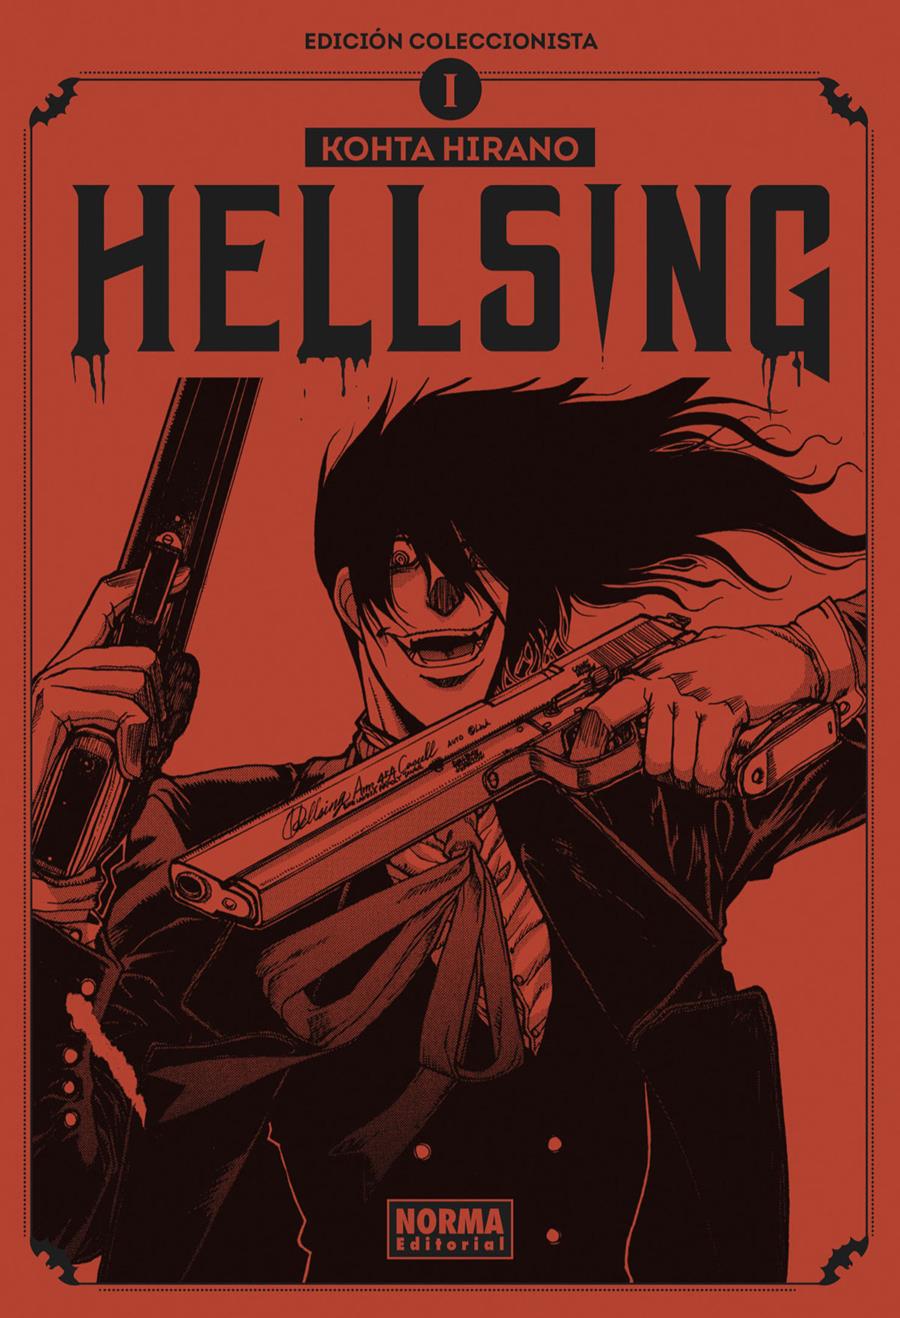 Hellsing 01. Edición coleccionista | N0321-NOR14 | Kohta Hinaro | Terra de Còmic - Tu tienda de cómics online especializada en cómics, manga y merchandising